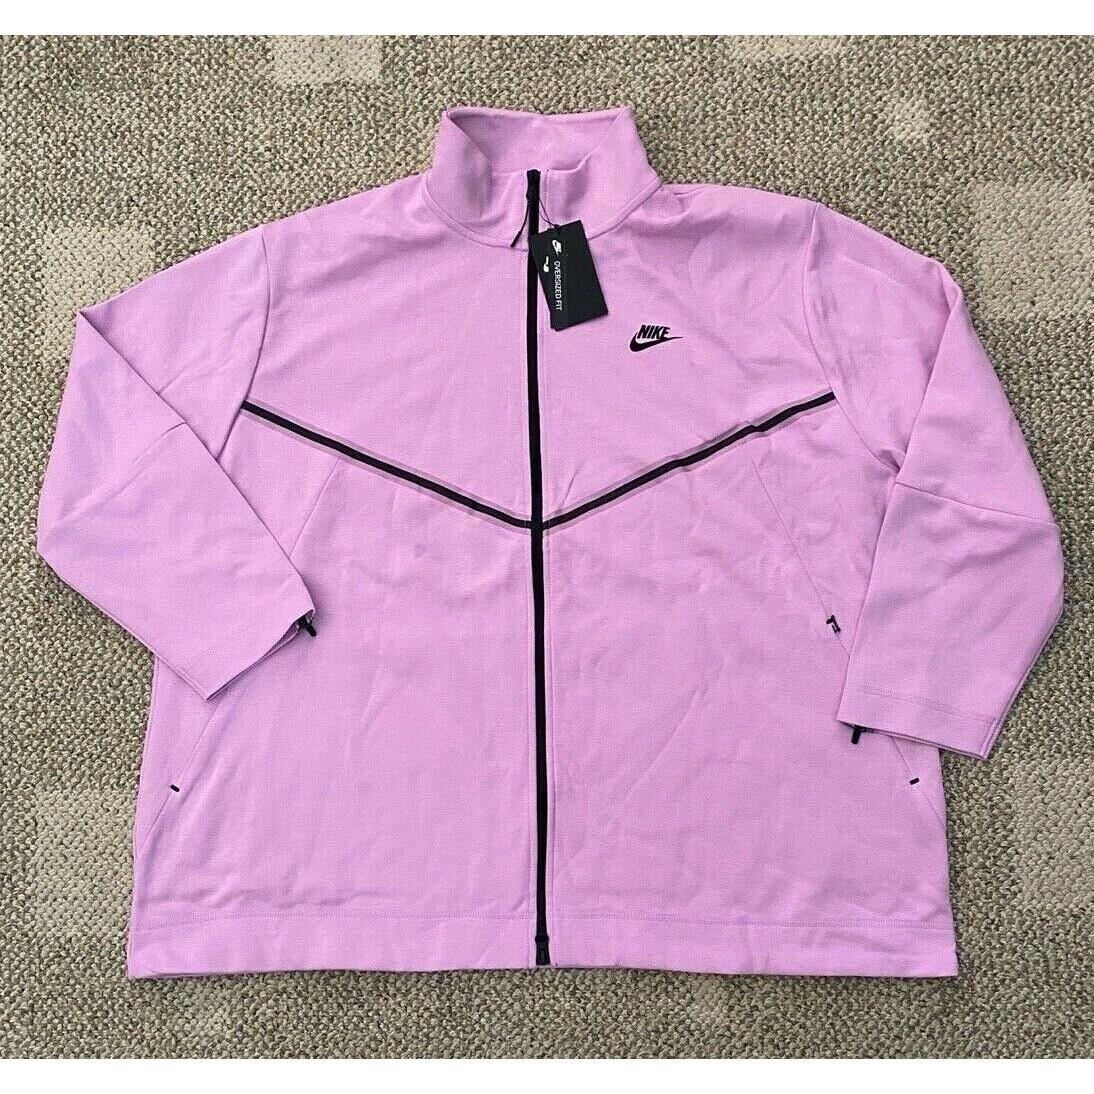 Womens Nike Sportswear Full Zip Sweatshirt Jacket Pink Size 2XL CW4296-690